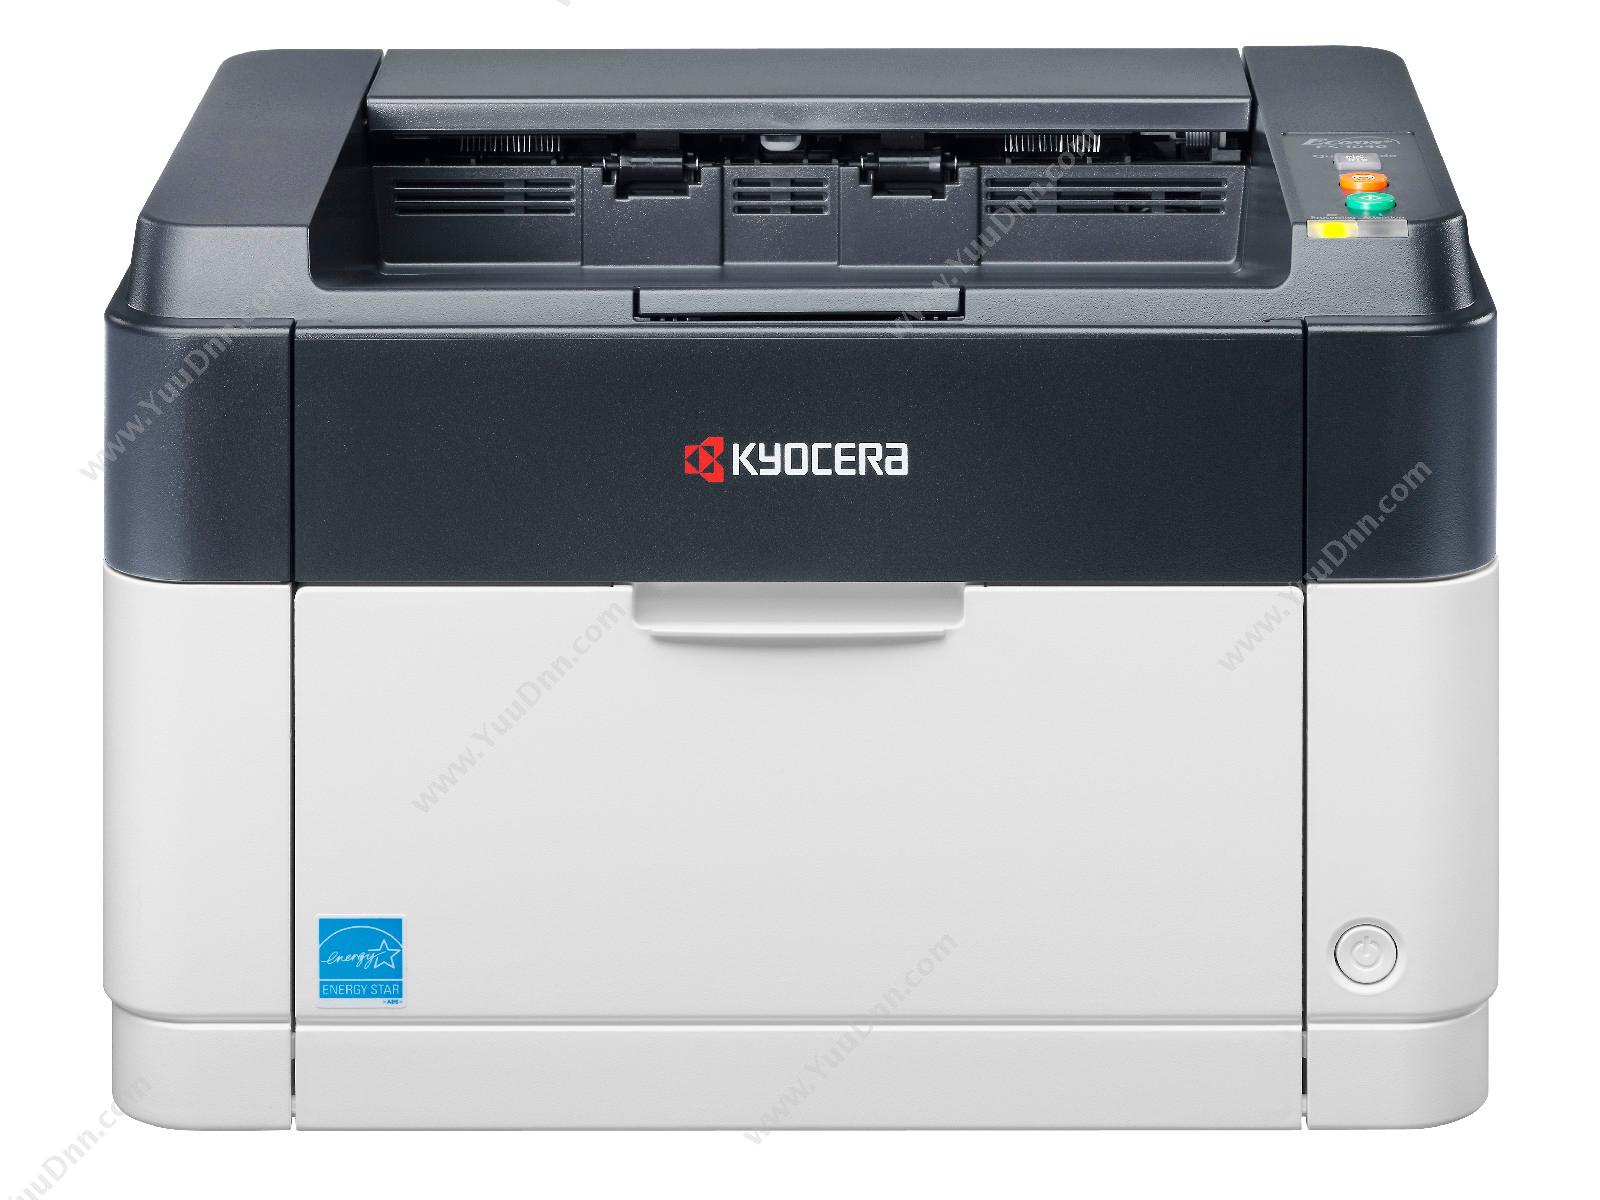 京瓷 KyoceraFS-1040A4黑白激光打印机